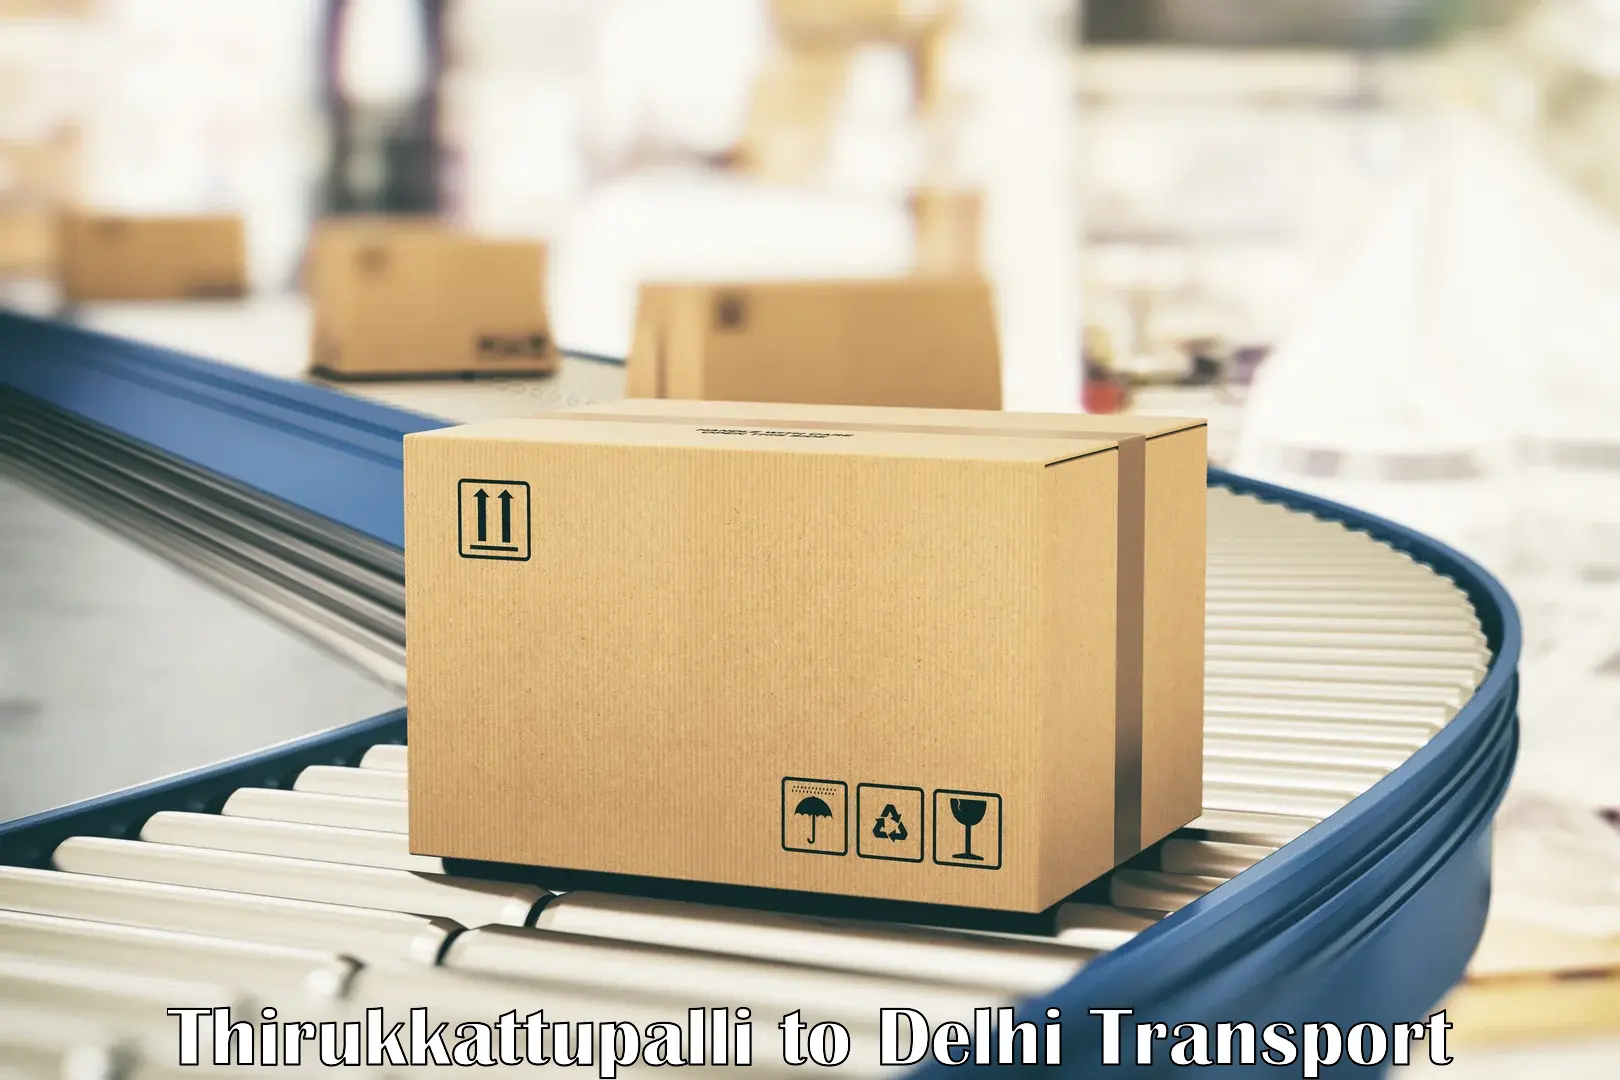 Shipping services Thirukkattupalli to NIT Delhi